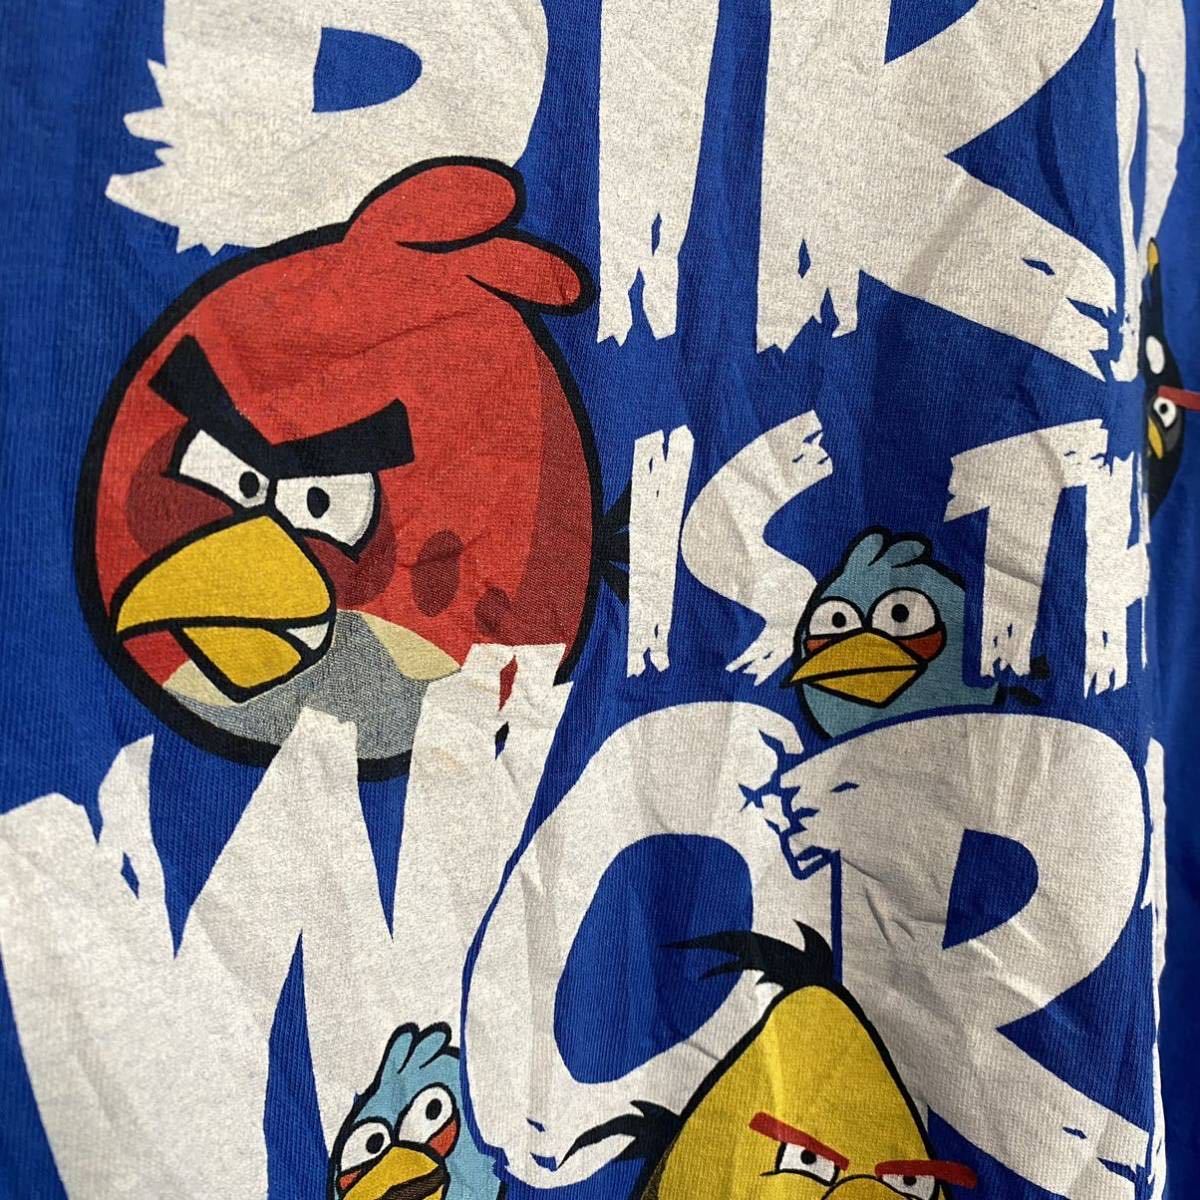 Angry Birds アングリーバード ブルー 青 半袖tシャツ Usa古着 キャラt Lサイズ 古着 イラスト キャラクター 売買されたオークション情報 Yahooの商品情報をアーカイブ公開 オークファン Aucfan Com